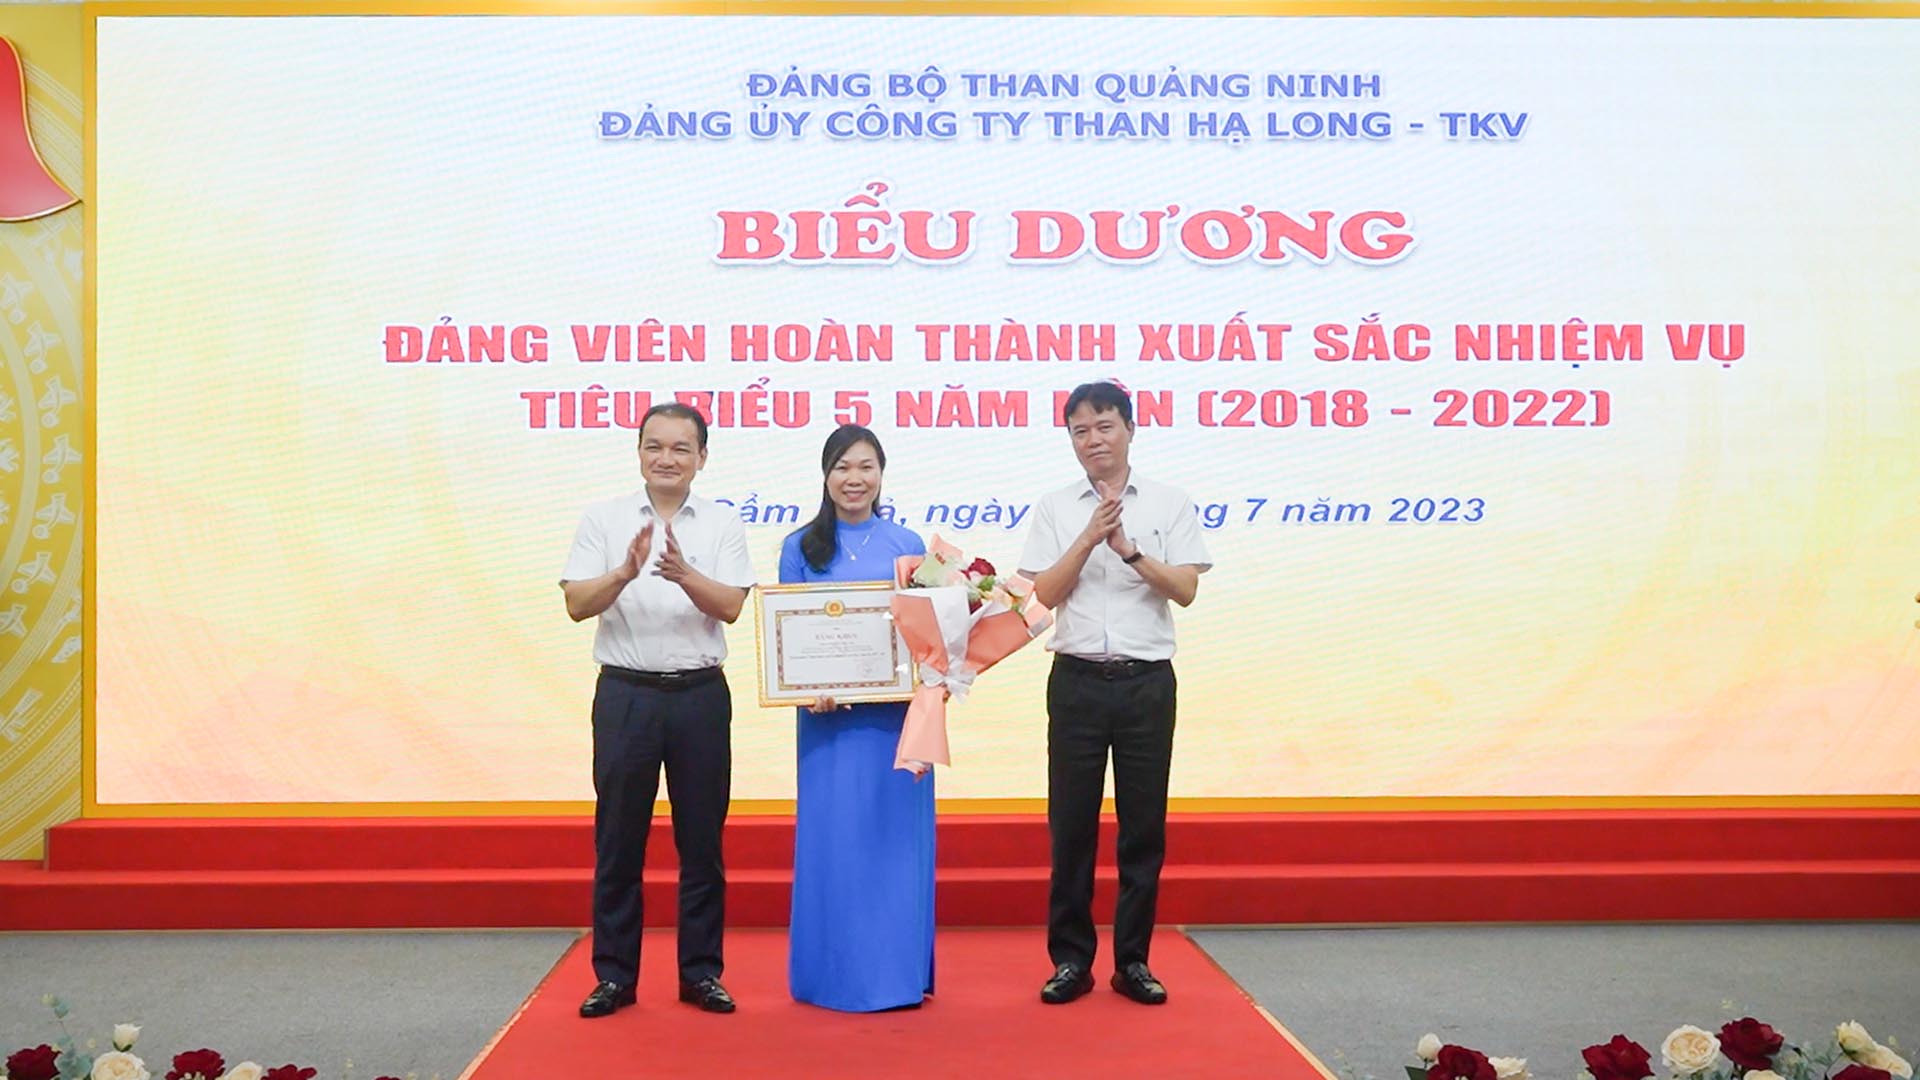 Bà Phạm Thị Lâm, chi bộ phòng ĐK, đạt tiêu chuẩn “Hoàn thành xuất sắc nhiệm vụ” tiêu biểu 5 năm liền 2018-2022 nhận bằng khen. Ảnh: Công ty Than Hạ Long. 